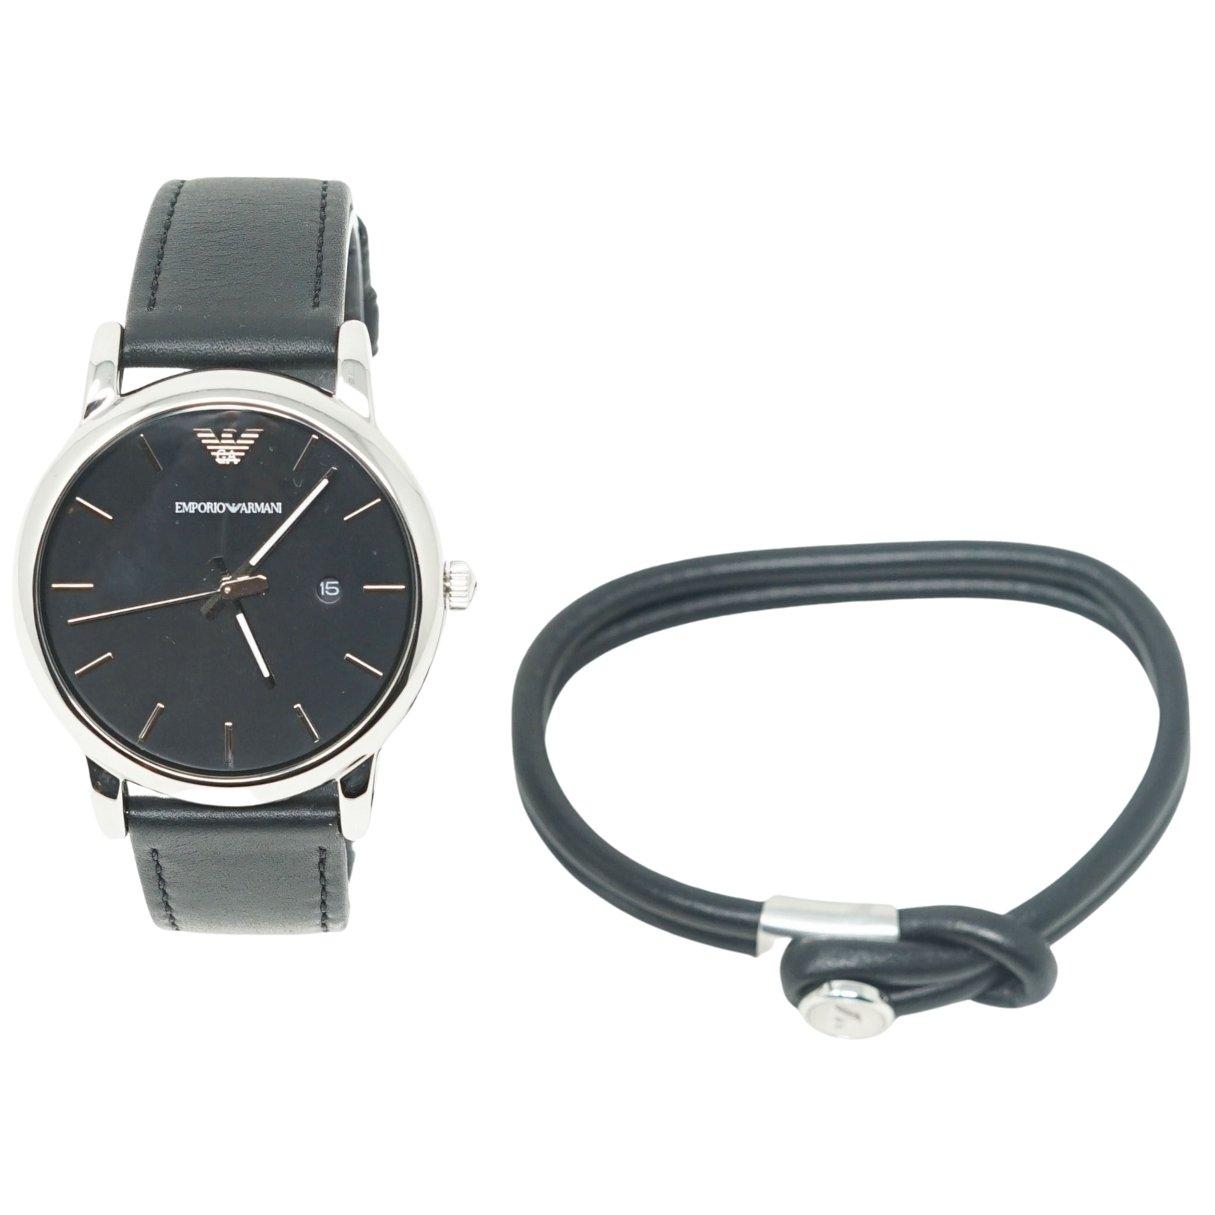 Часы с черным кожаным ремешком Emporio Armani, серебро часы мужские механические водонепроницаемые до 50 м с кожаным ремешком